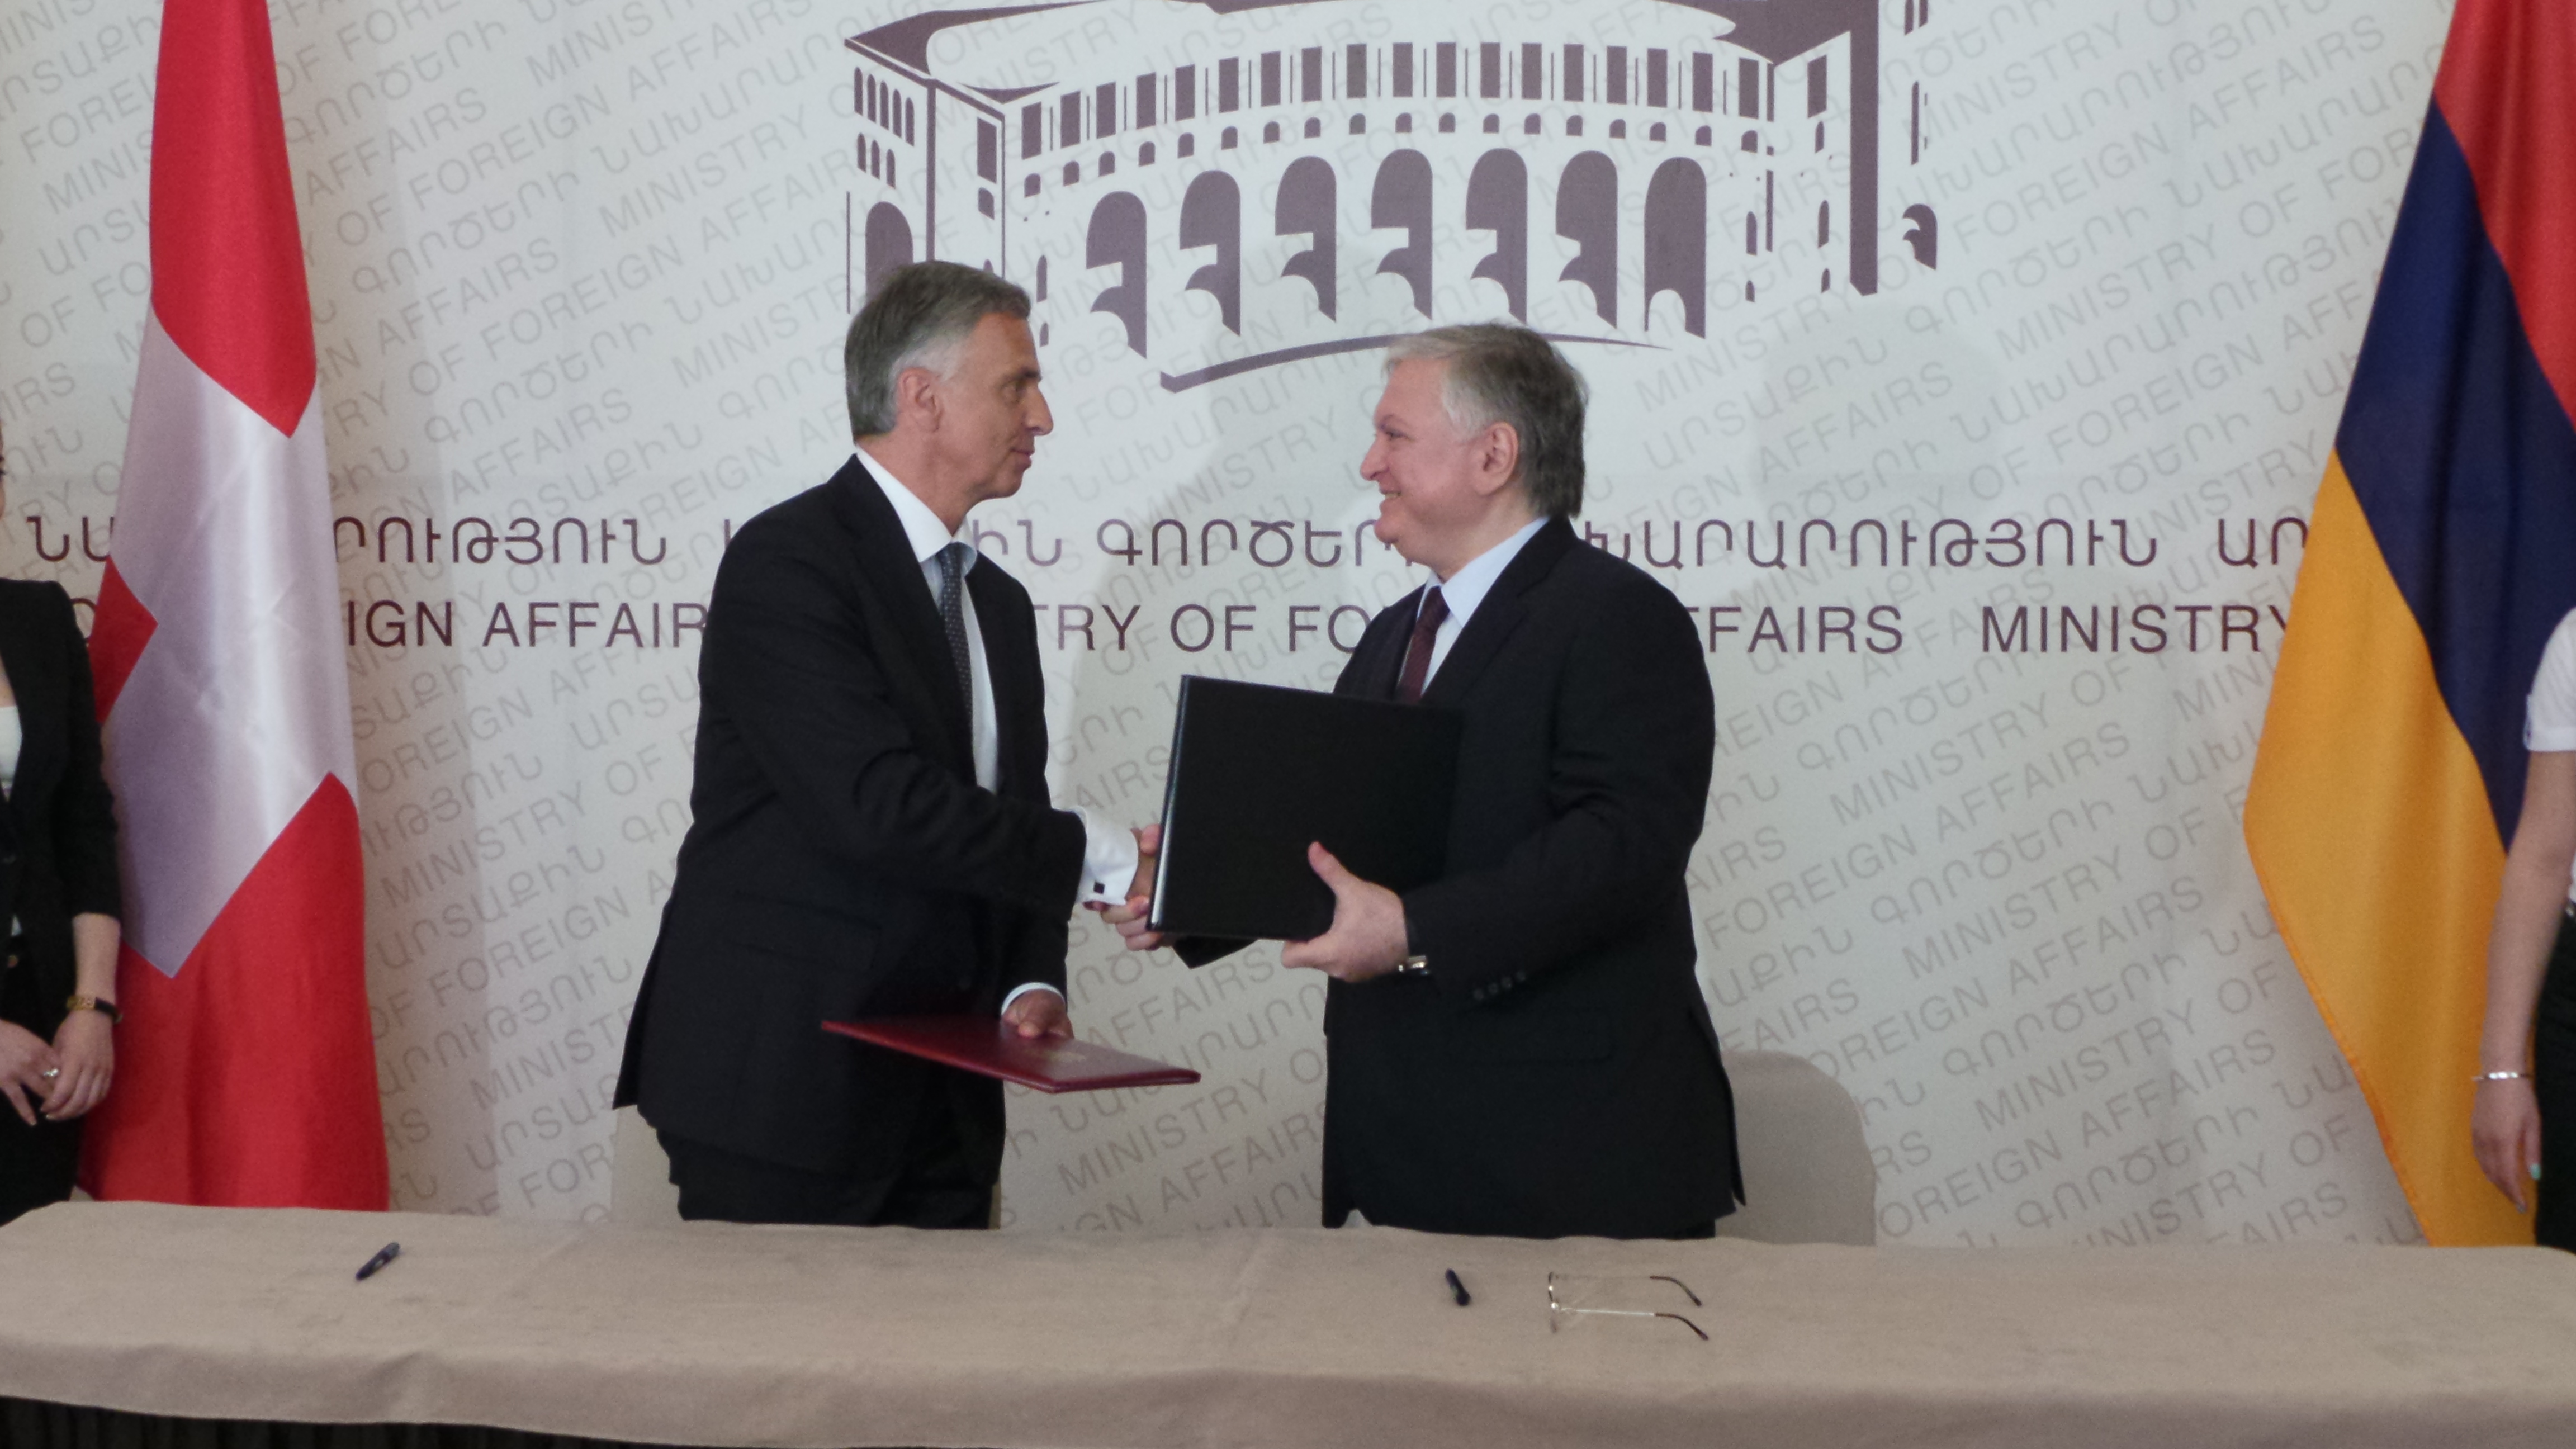 Le président de la Confédération Didier Burkhalter et le ministre des affaires étrangères arménien Edouard Nalbandian signent un accord de coopération entre les ministères des affaires étrangères suisse et arménien.